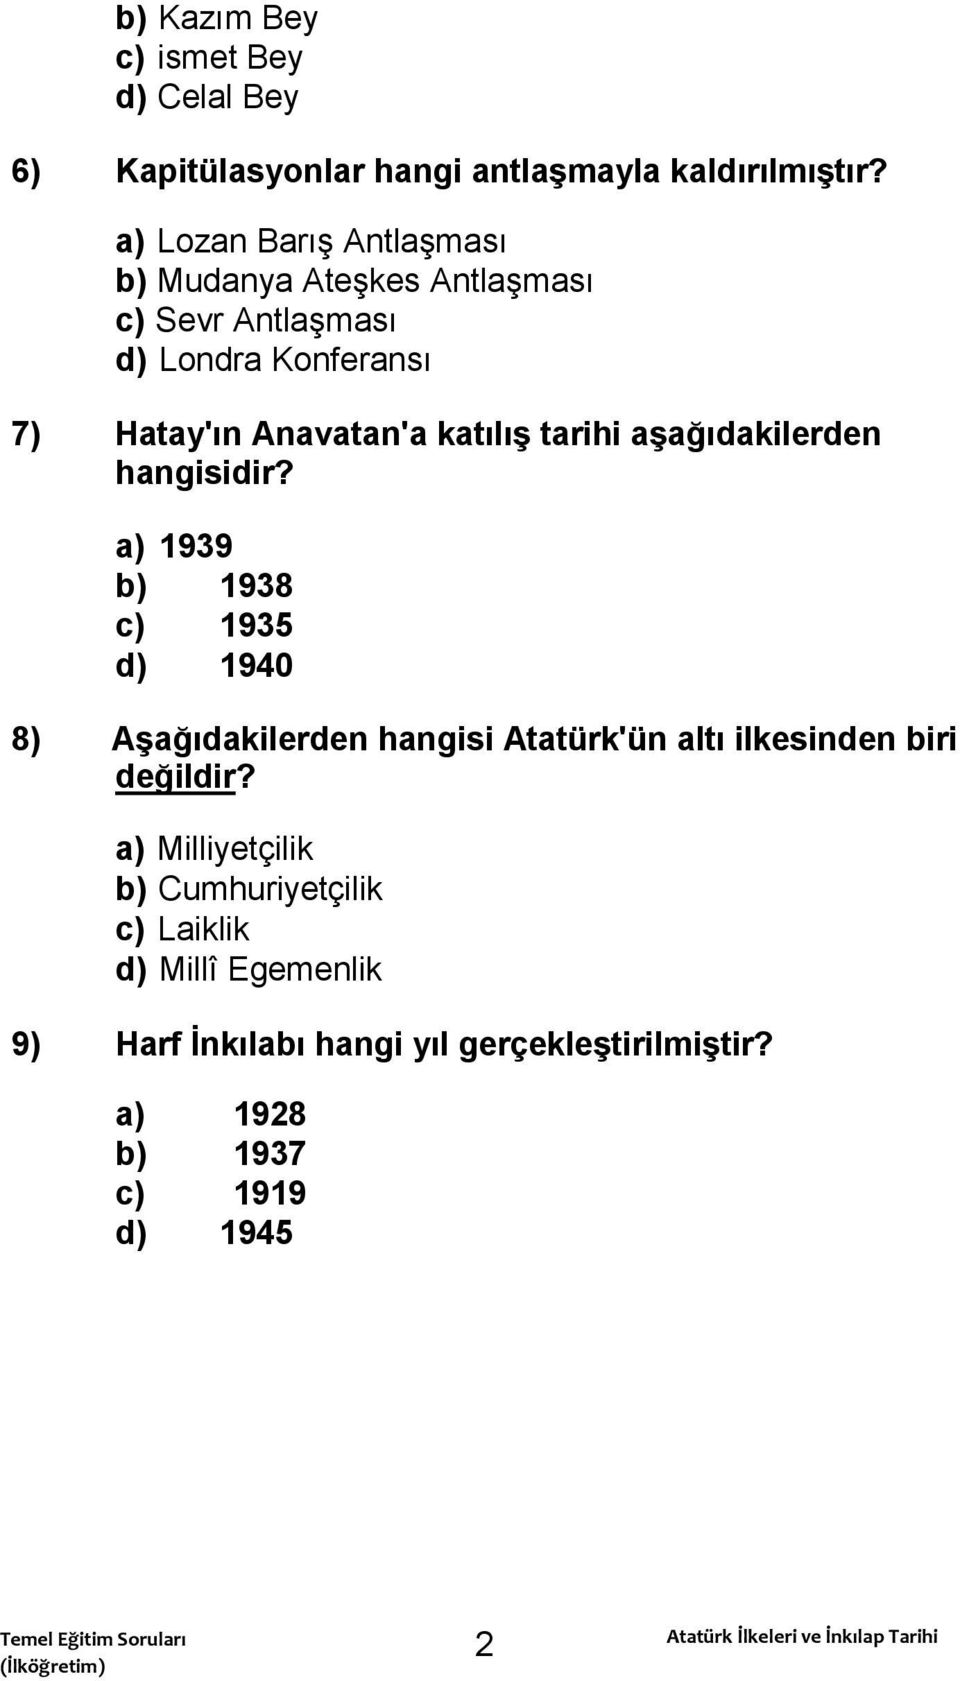 aģağıdakilerden hangisidir? a) 1939 b) 1938 c) 1935 d) 1940 8) AĢağıdakilerden hangisi Atatürk'ün altı ilkesinden biri değildir?